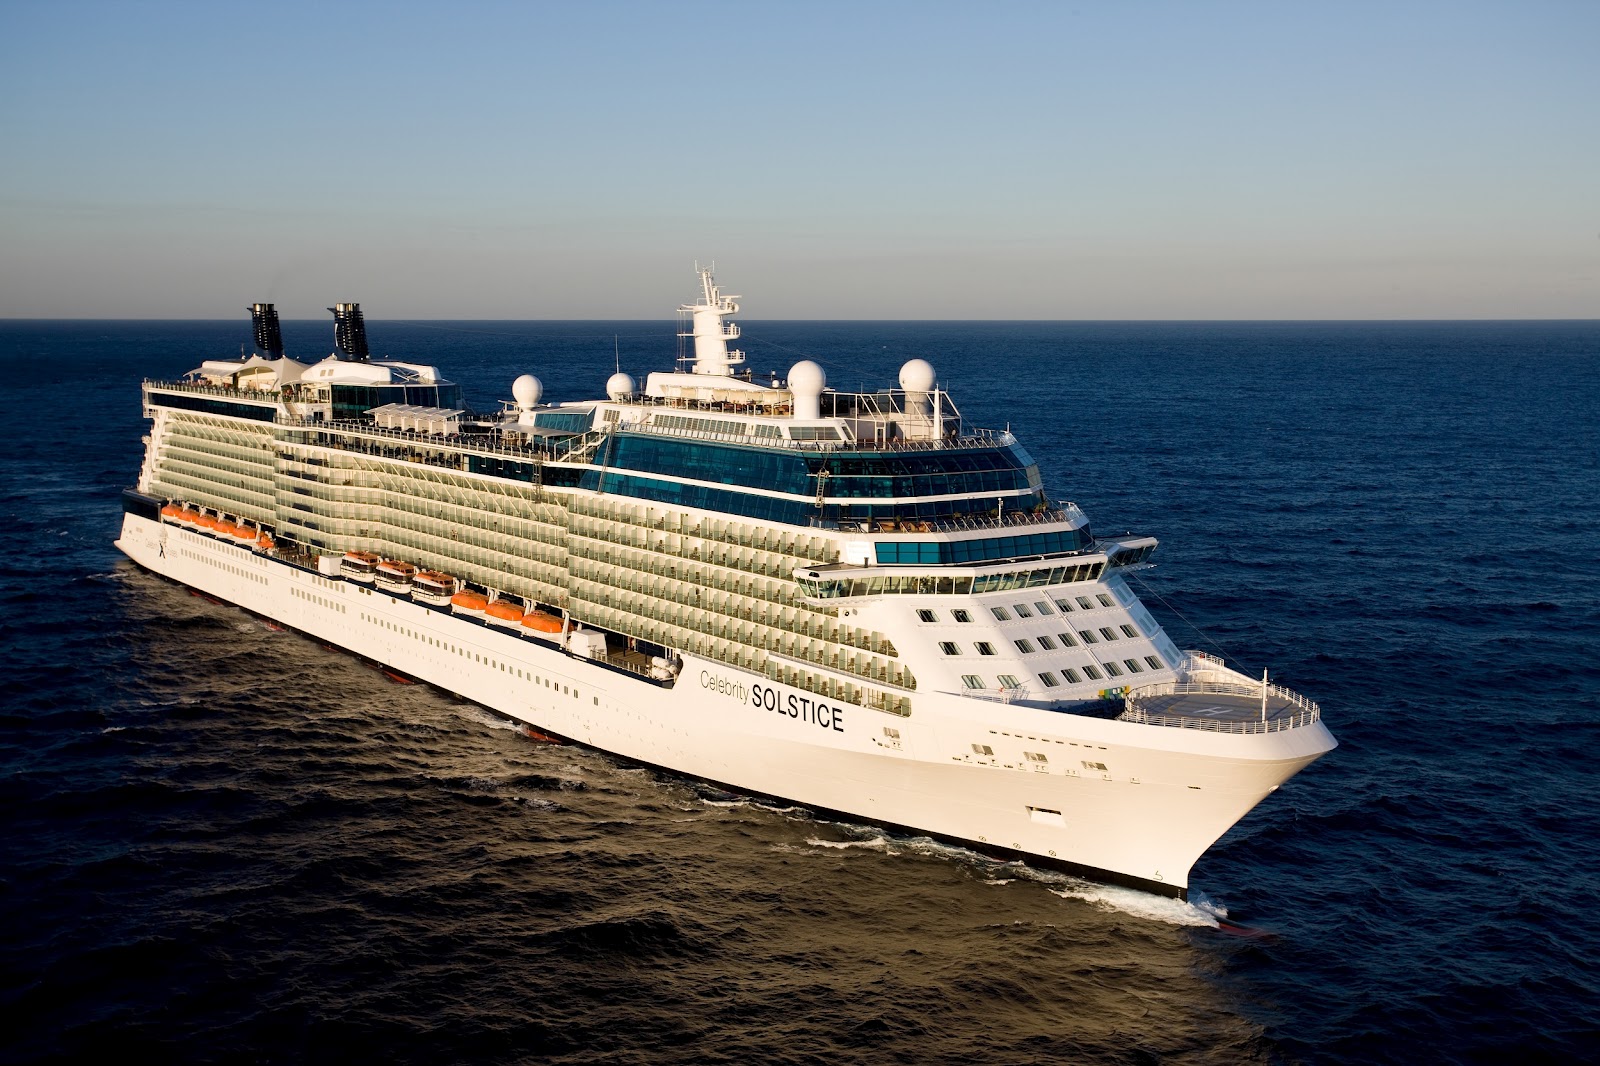 navio, celebrity solstice, celebrity cruises, fotos, detalhes, cruzeiro, turismo